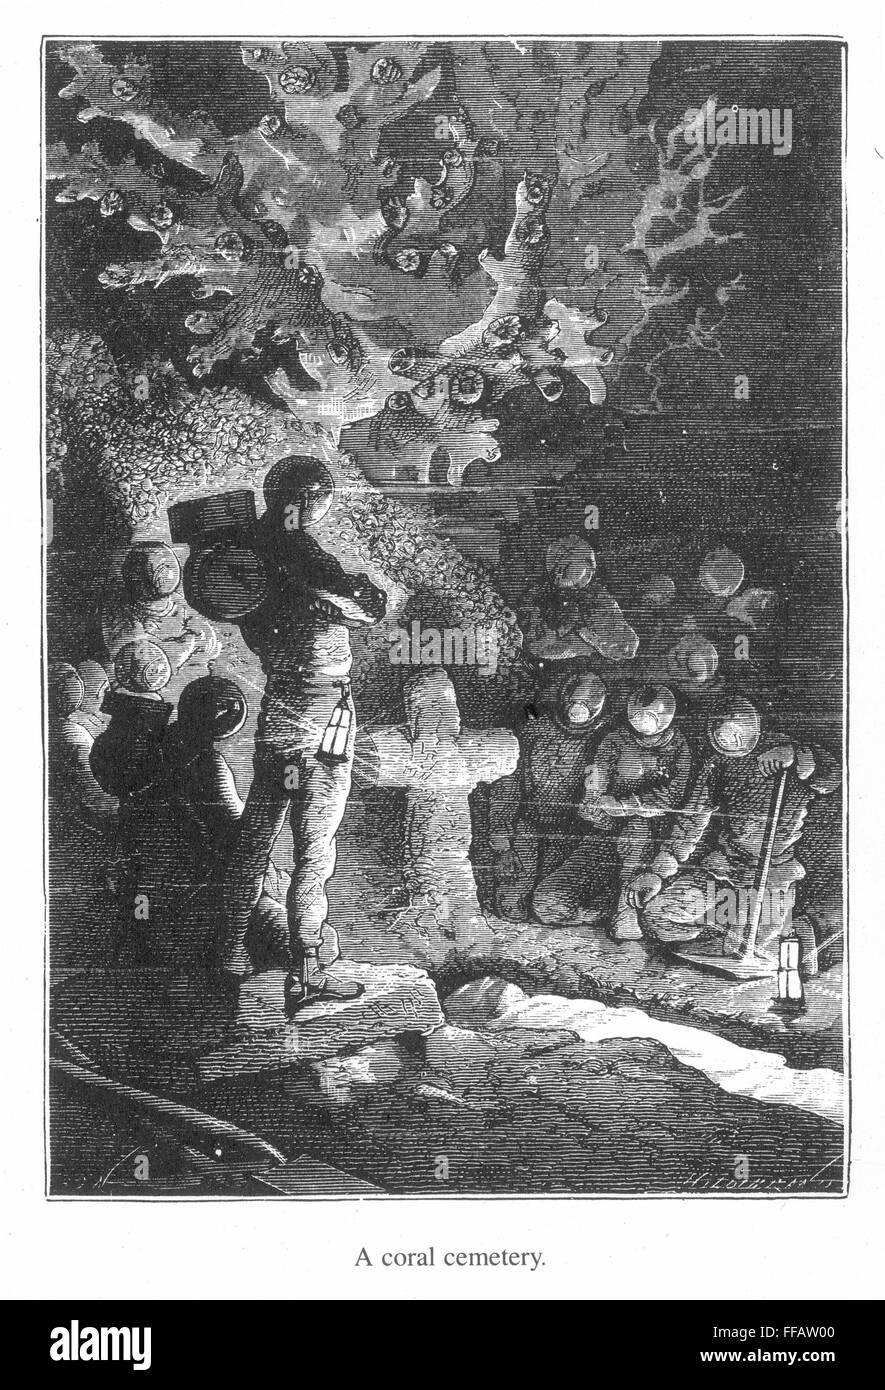 VERNE : 20 000 lieues. /N'un cimetière de corail" - gravure sur bois d'après un dessin par Alphonse de Neuville à partir d'une édition 1870 de Jules Verne, Vingt mille lieues sous les mers". Banque D'Images